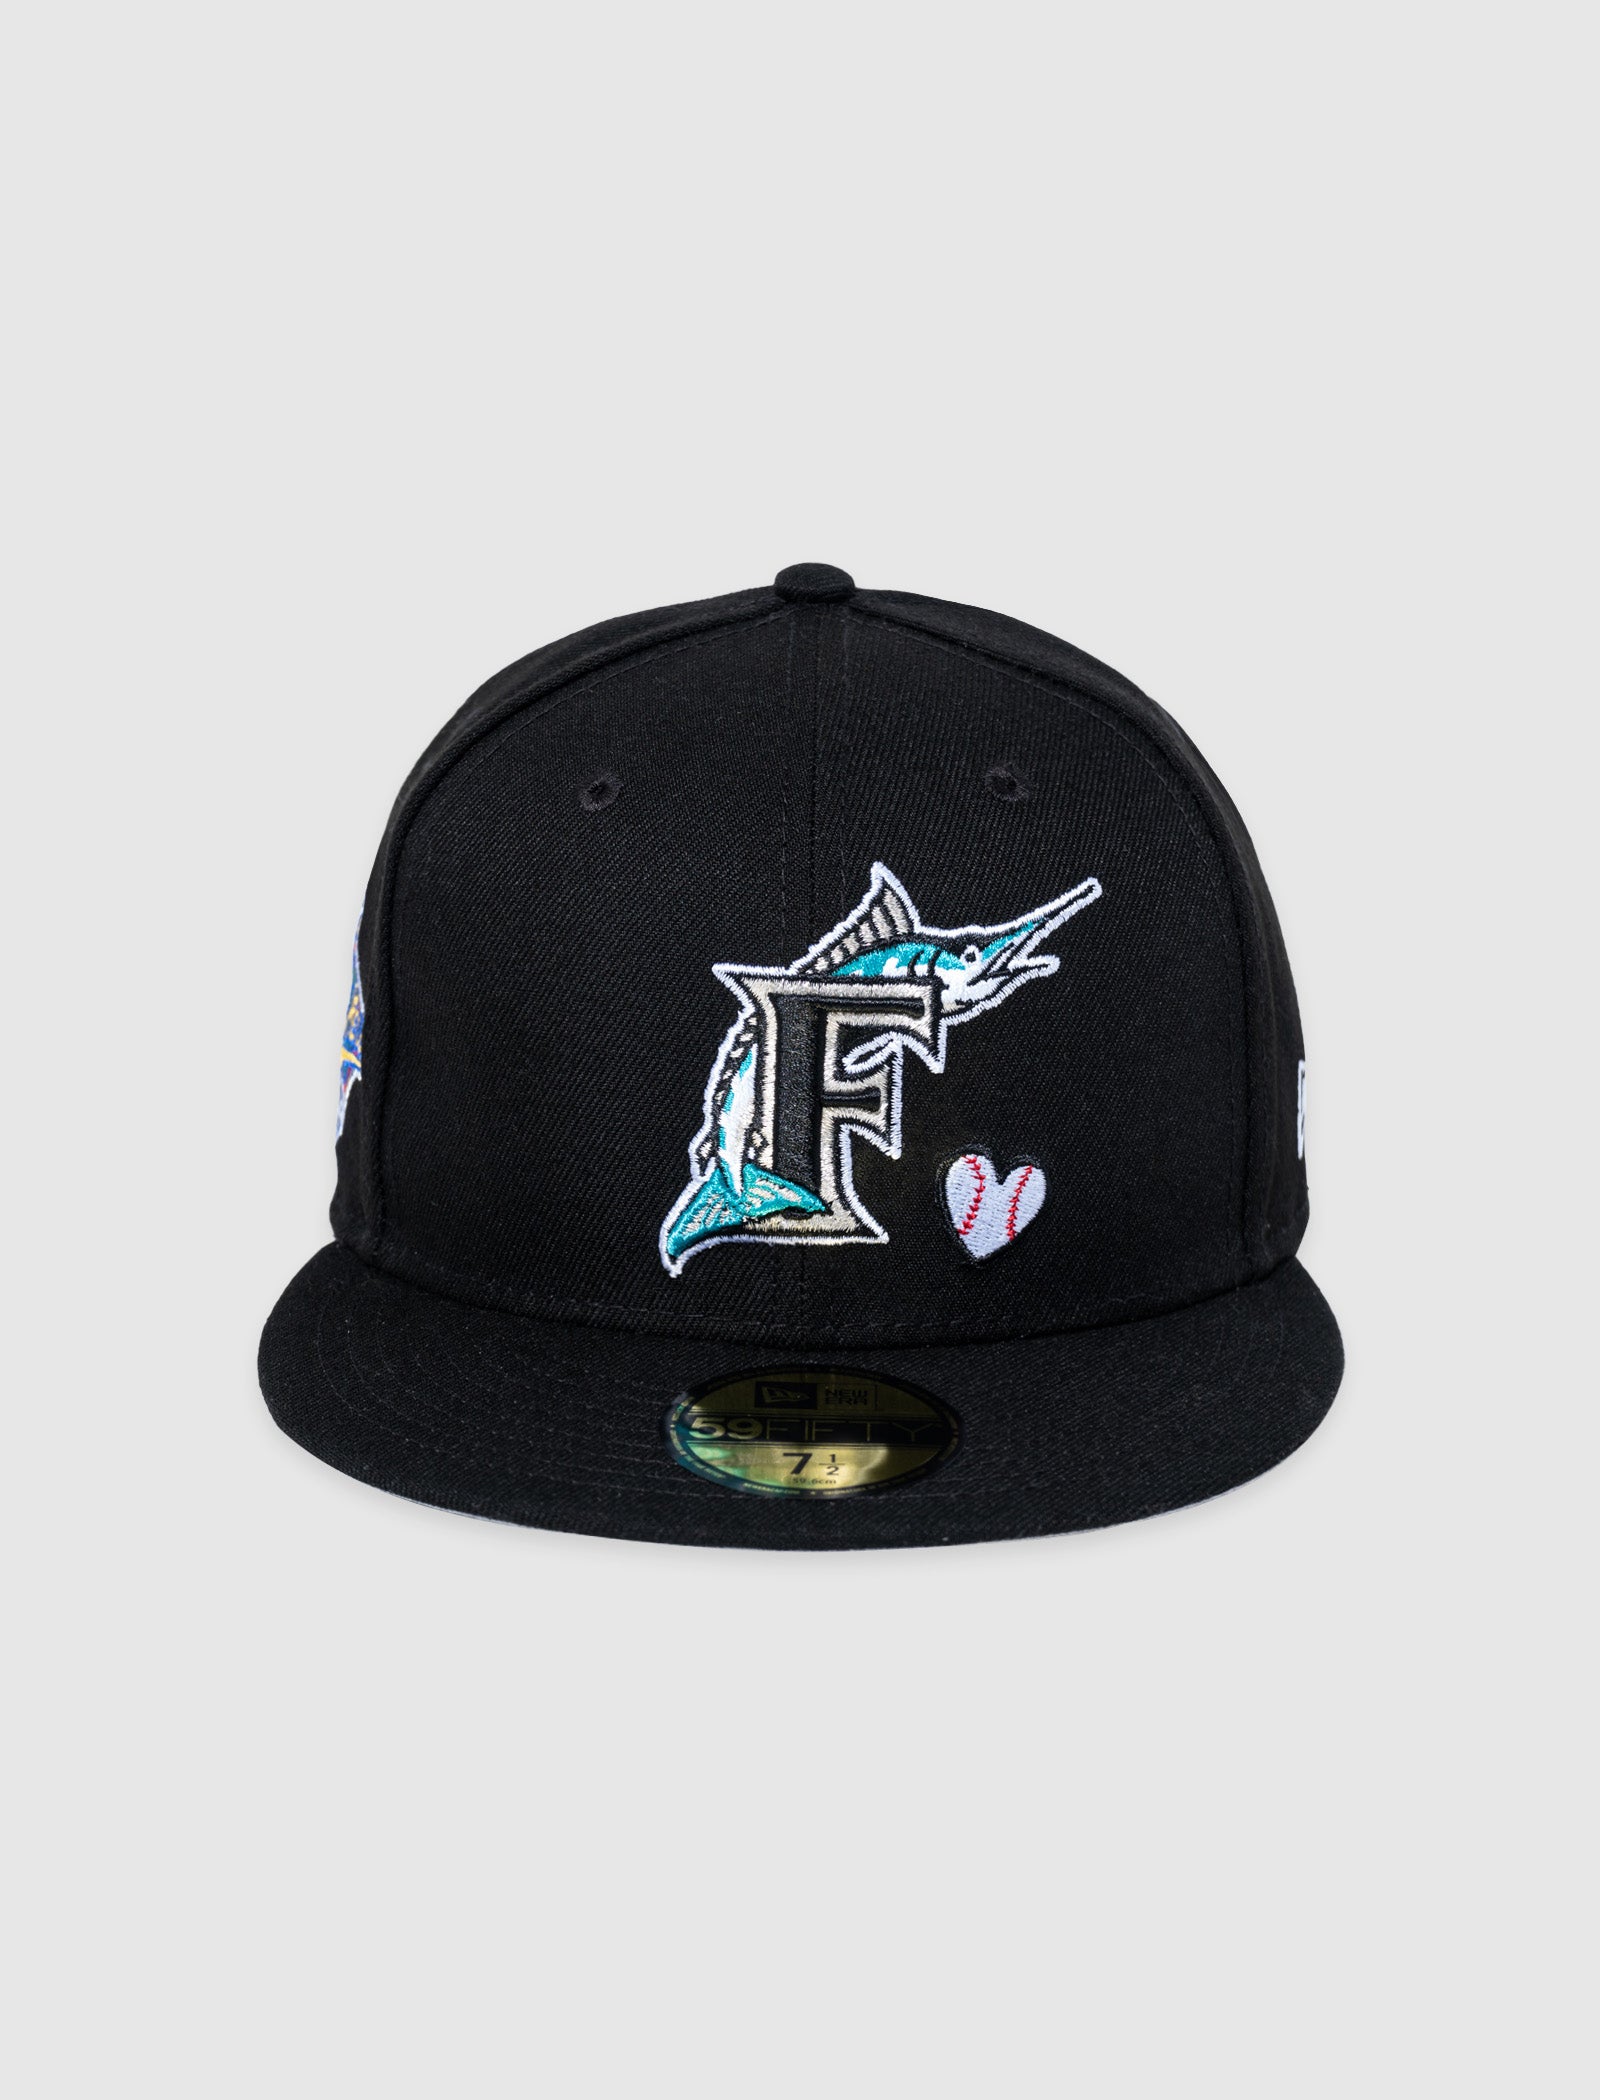 New Era fl Marlins Hat 7 1/4